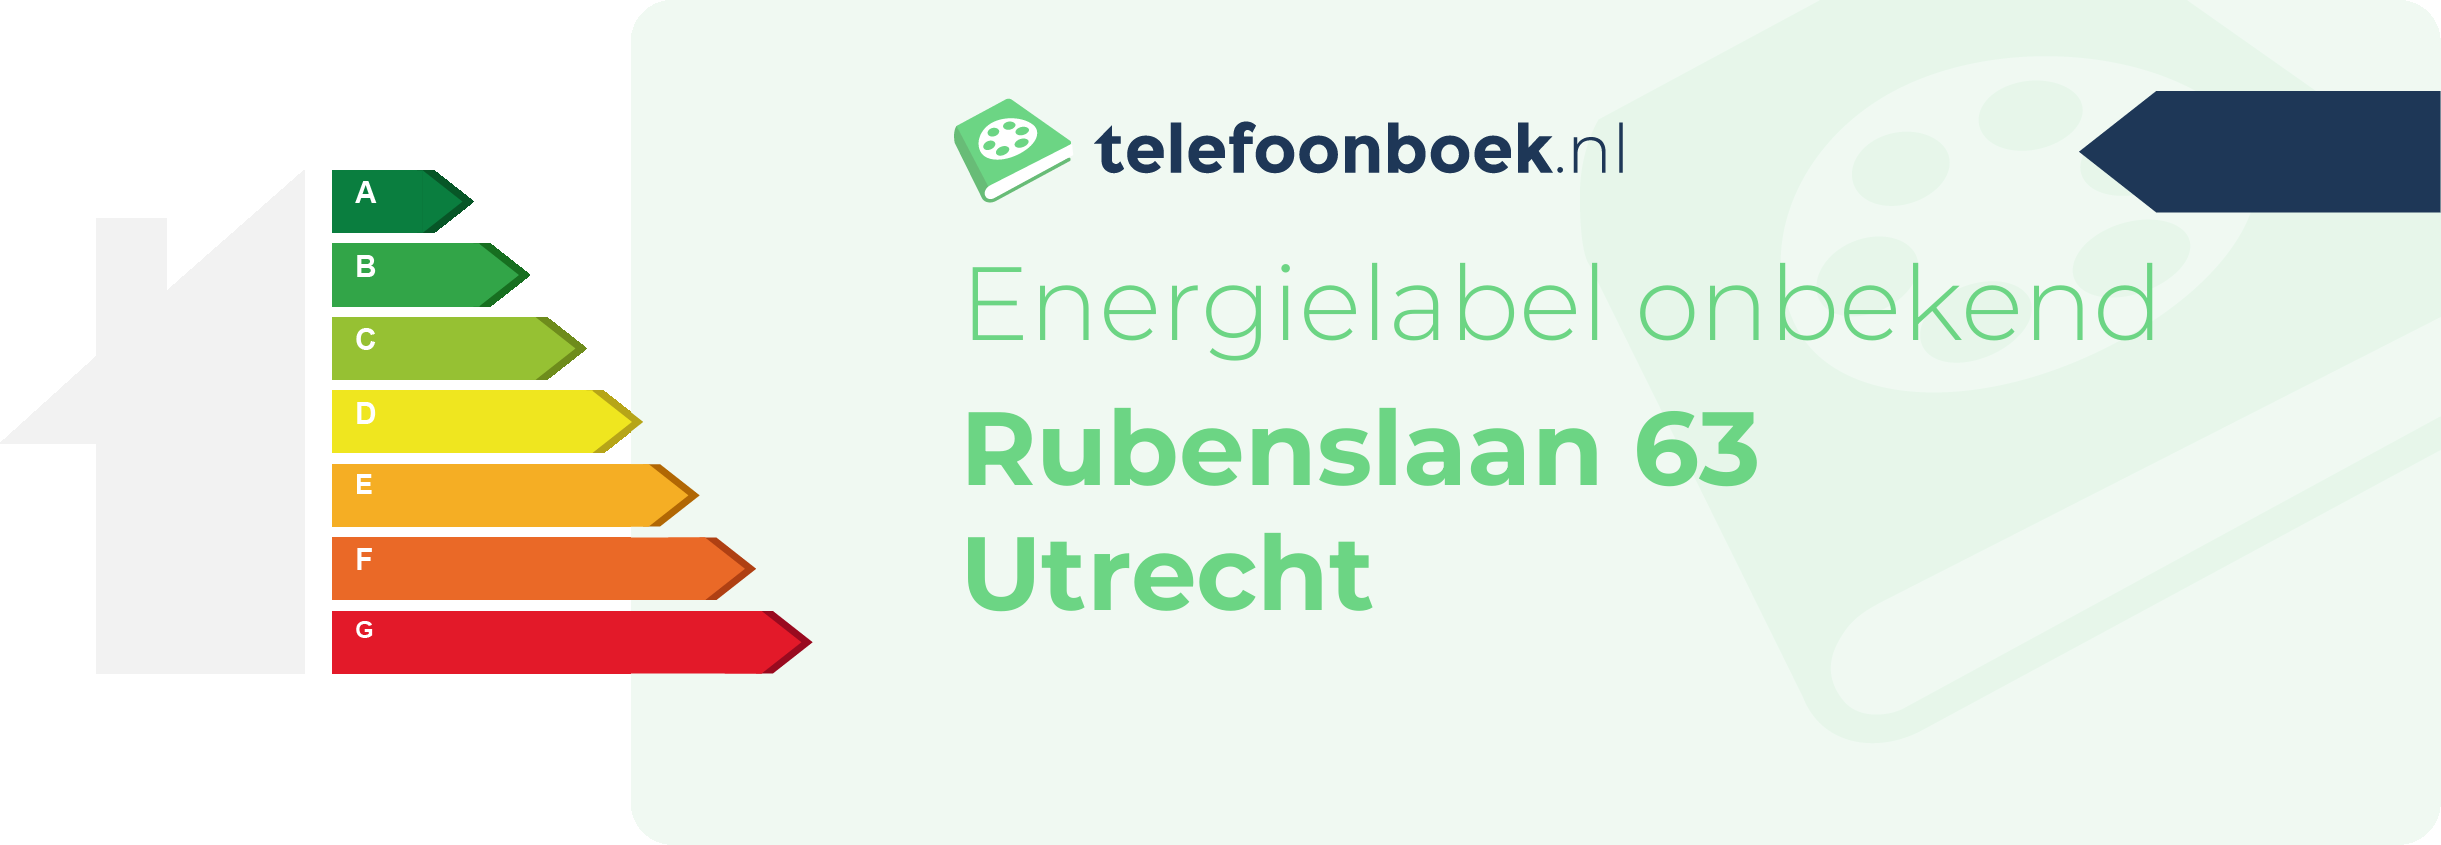 Energielabel Rubenslaan 63 Utrecht